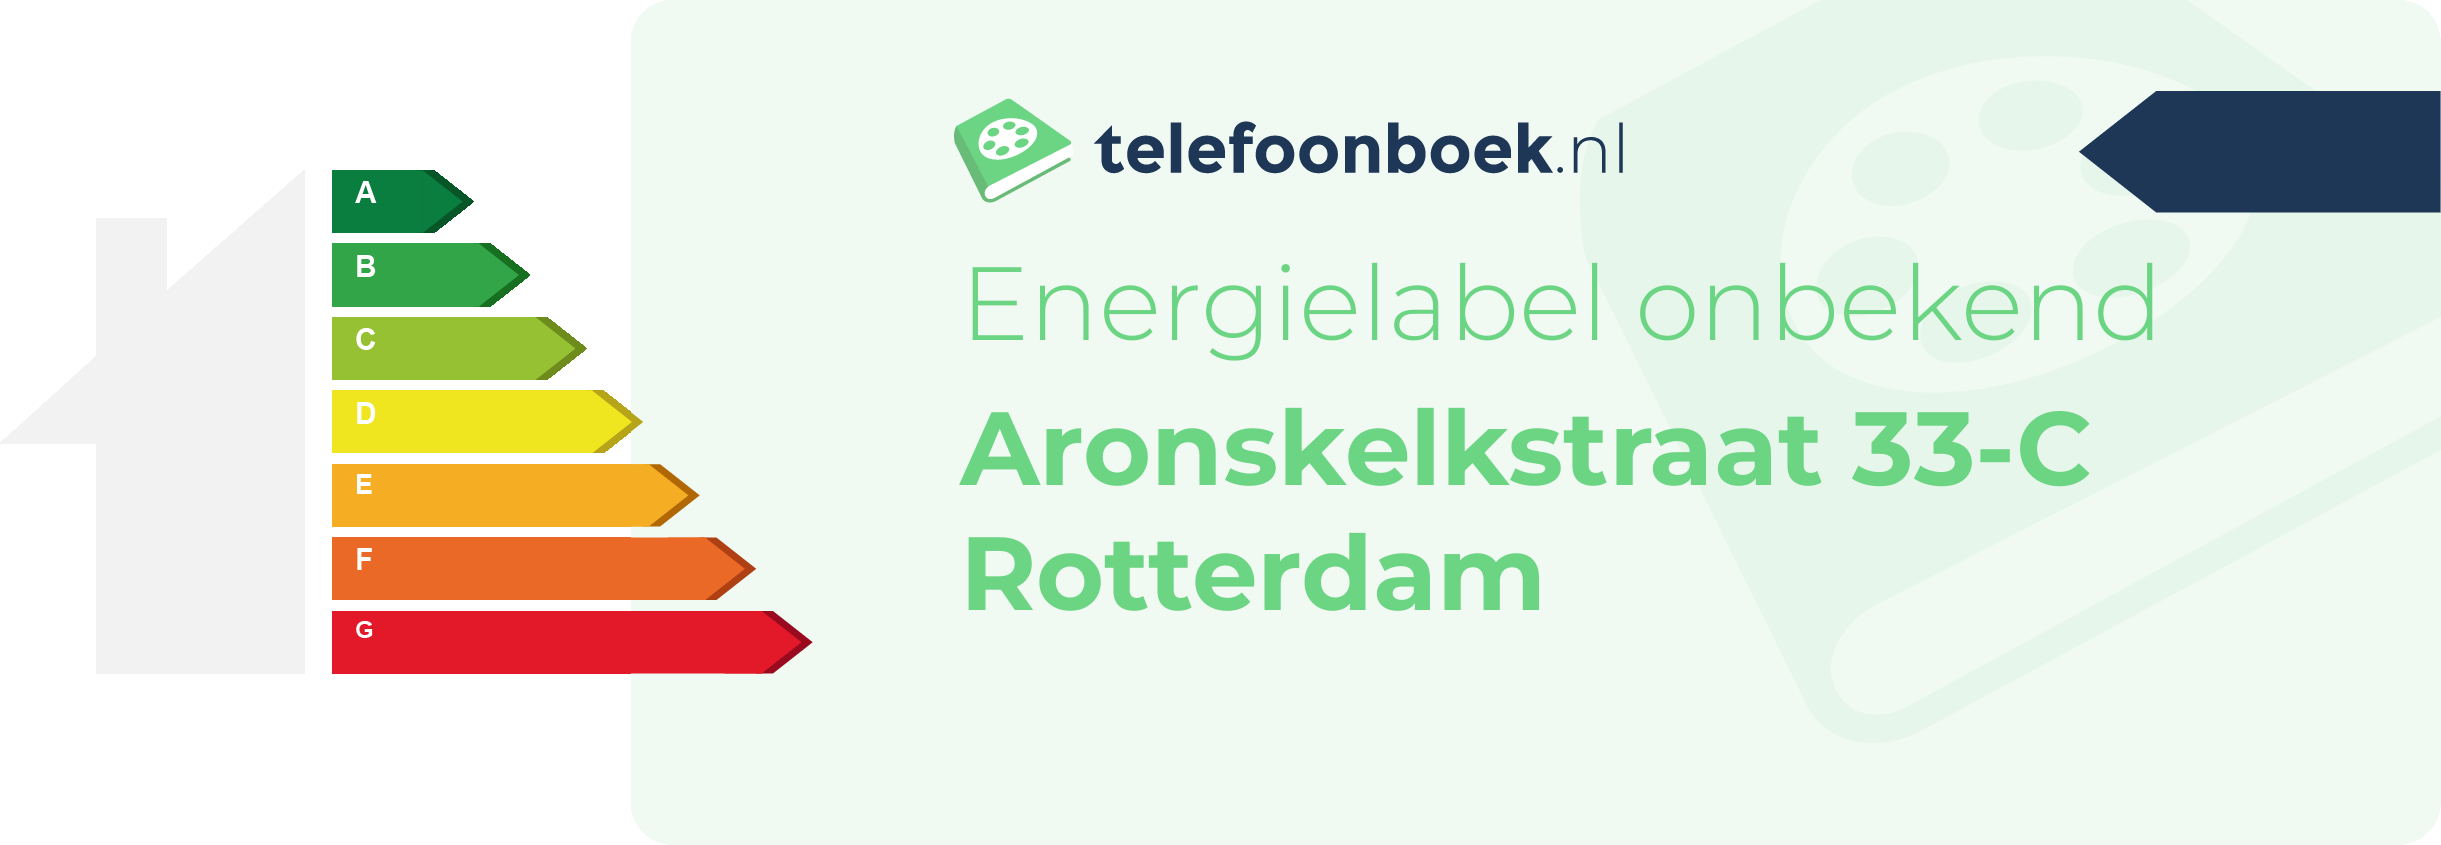 Energielabel Aronskelkstraat 33-C Rotterdam